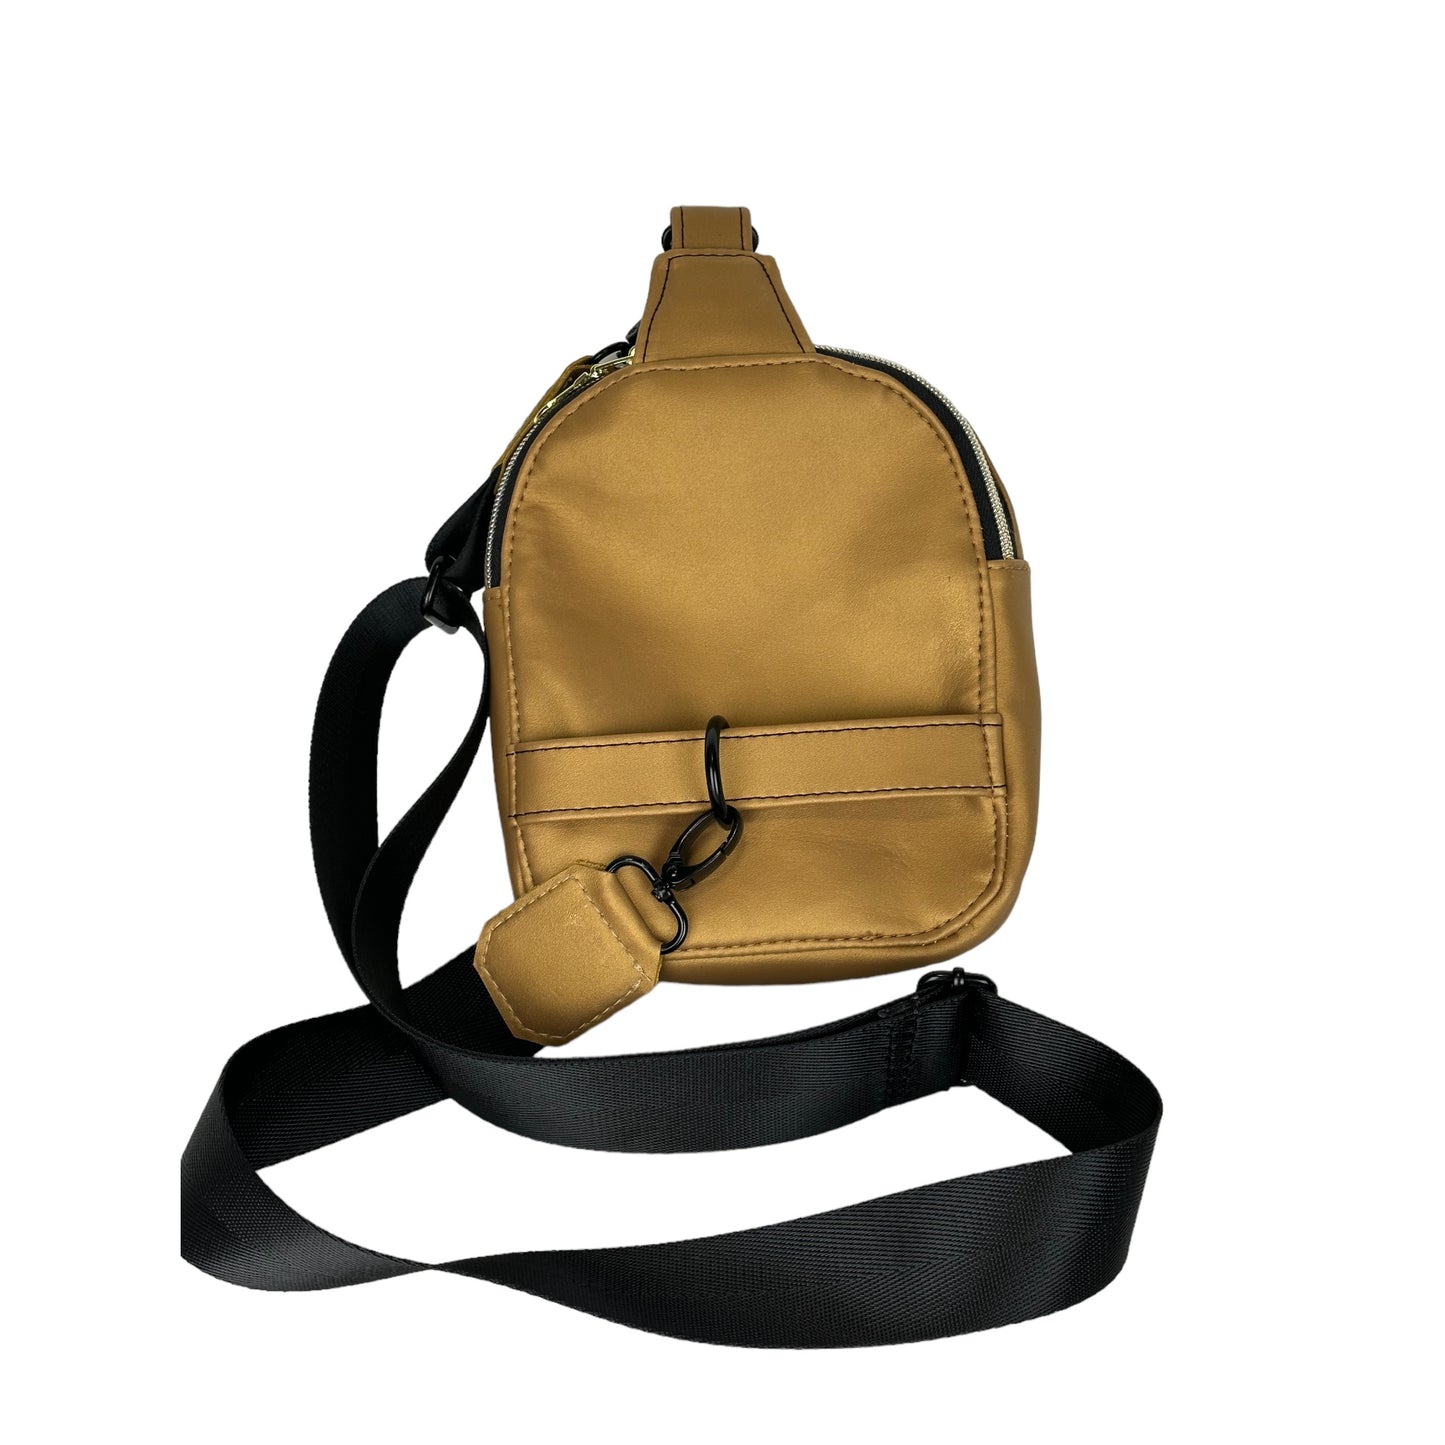 Gold sling bag